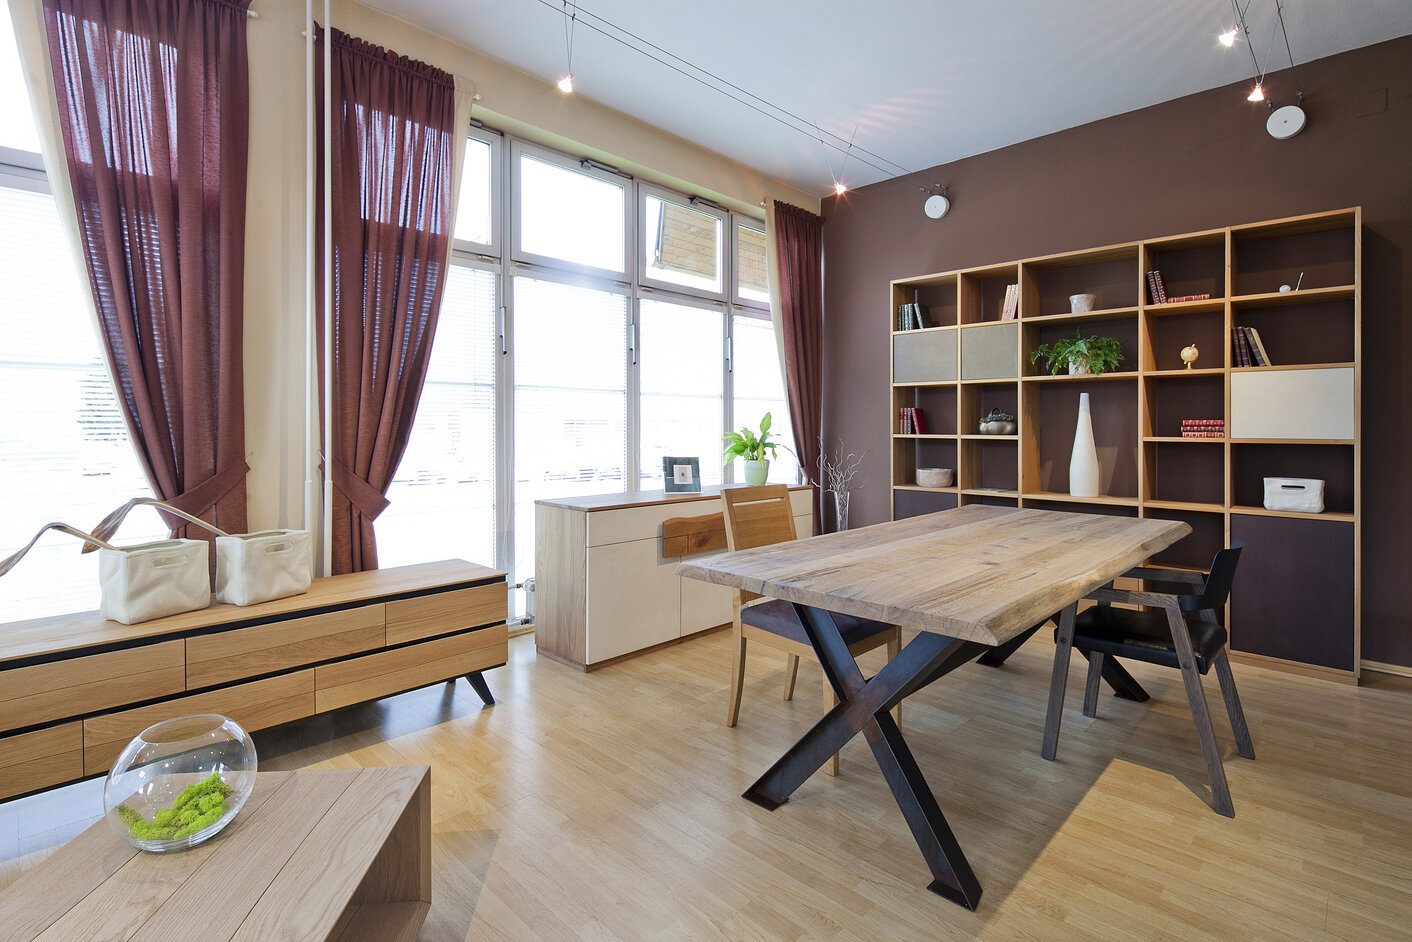 Priestranná jedáleň v modernom, minimalistickom štýle. Masívny nábytok je tvorený z dreveného jedálenského stola, dvoch drevených komôd a obývacej steny v svetlohnedej farbe. Dominantou celej miestnosti sú francúzske okná